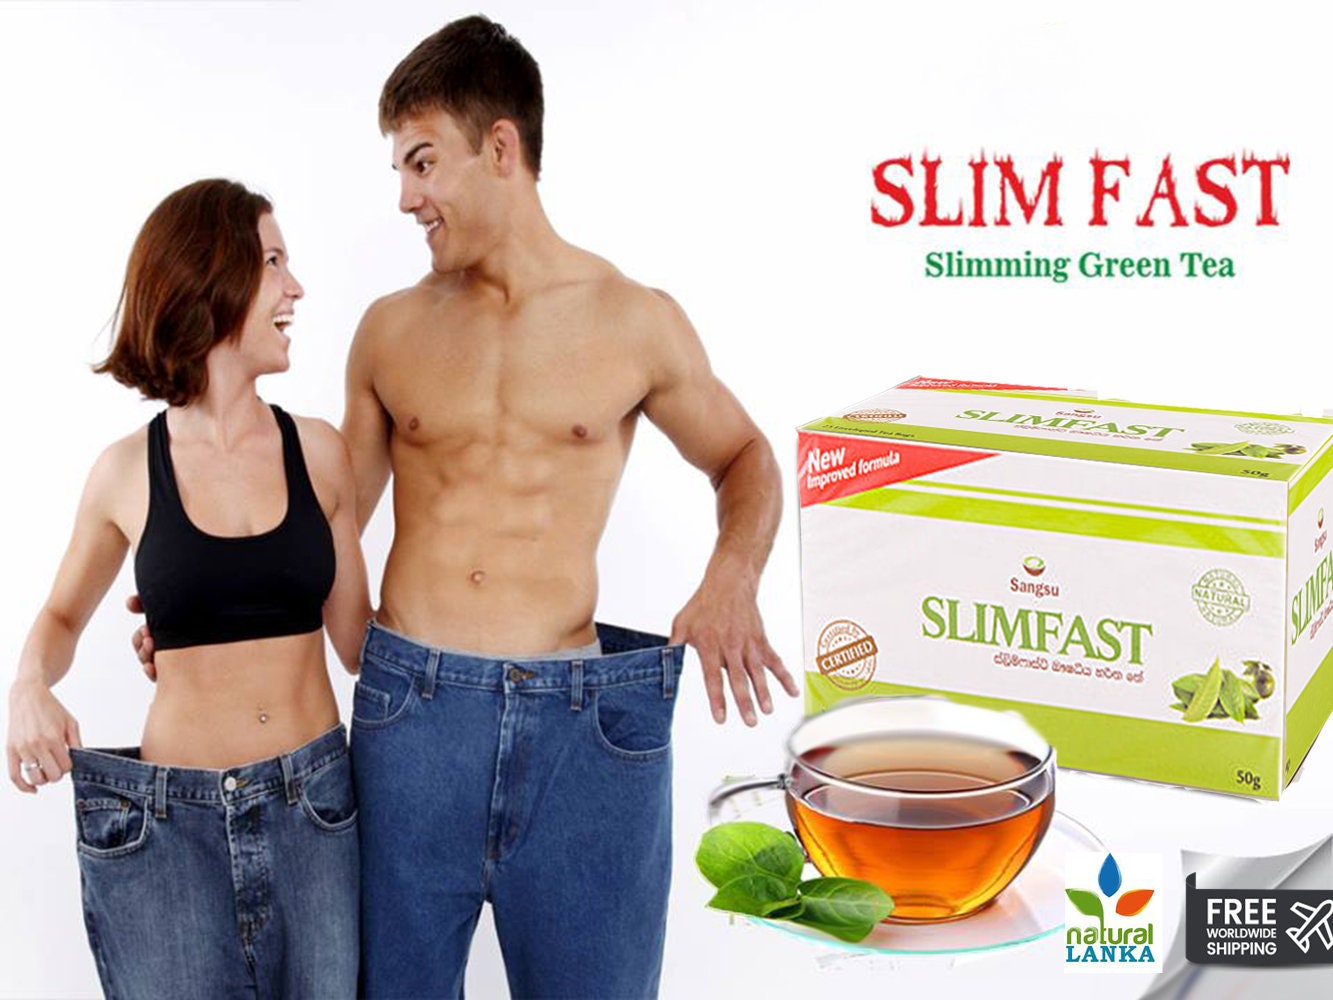 Weight Loss Tea Sangsu SLIM FAST Fast Fat Burning Green Tea Sri Lankan  Slimming Green Tea Slim Fast Weight Loss Tea 